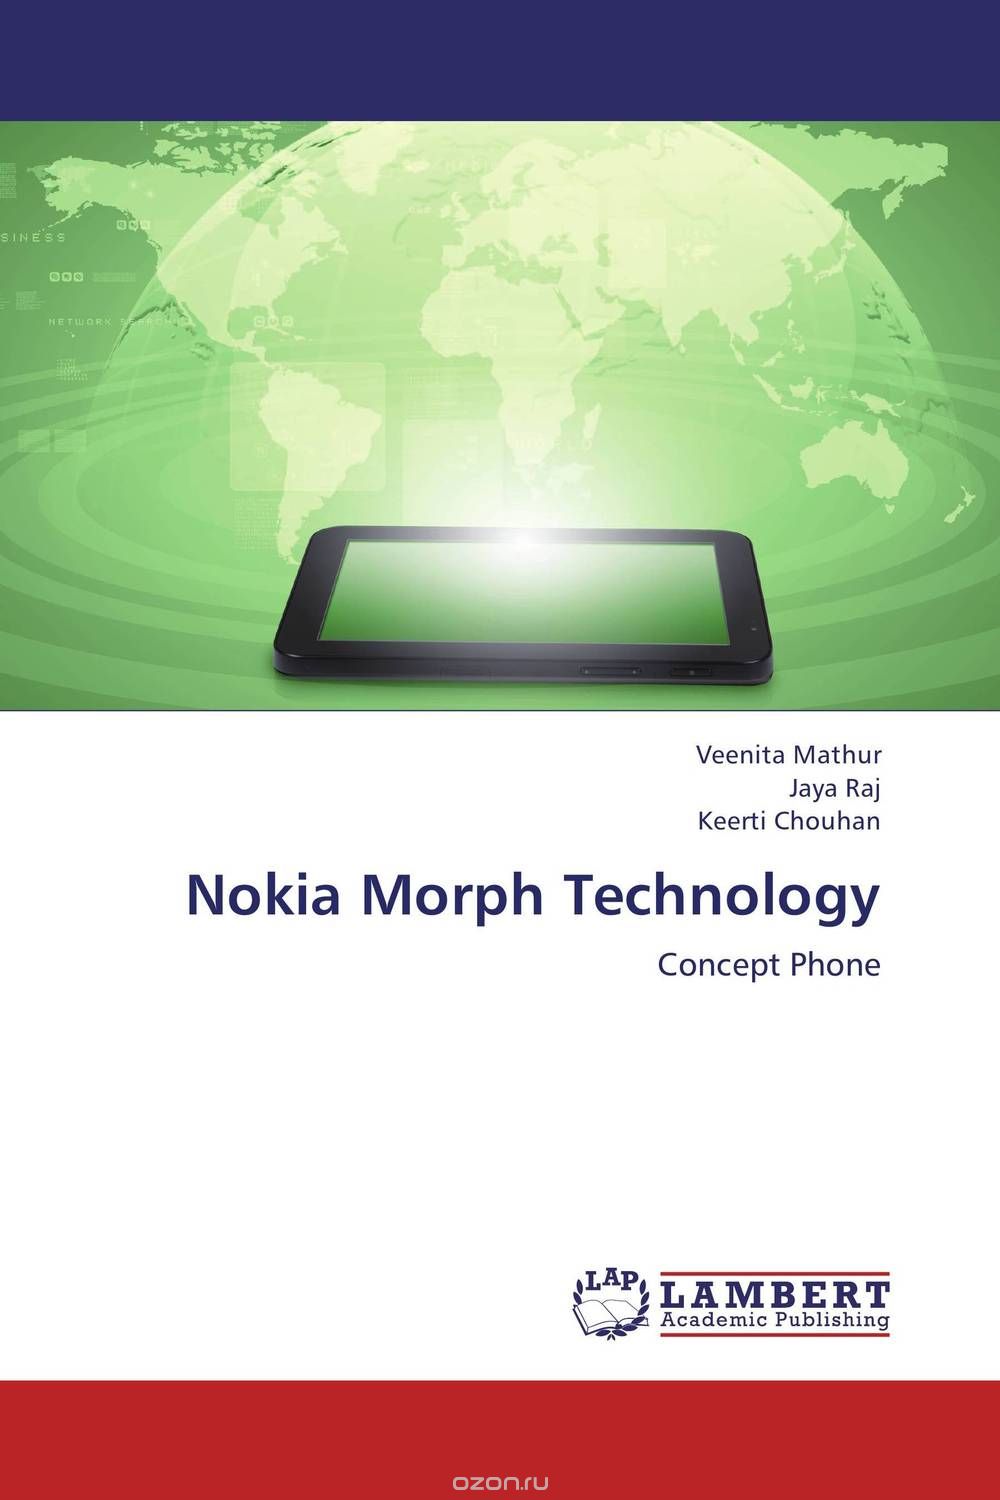 Скачать книгу "Nokia Morph Technology"